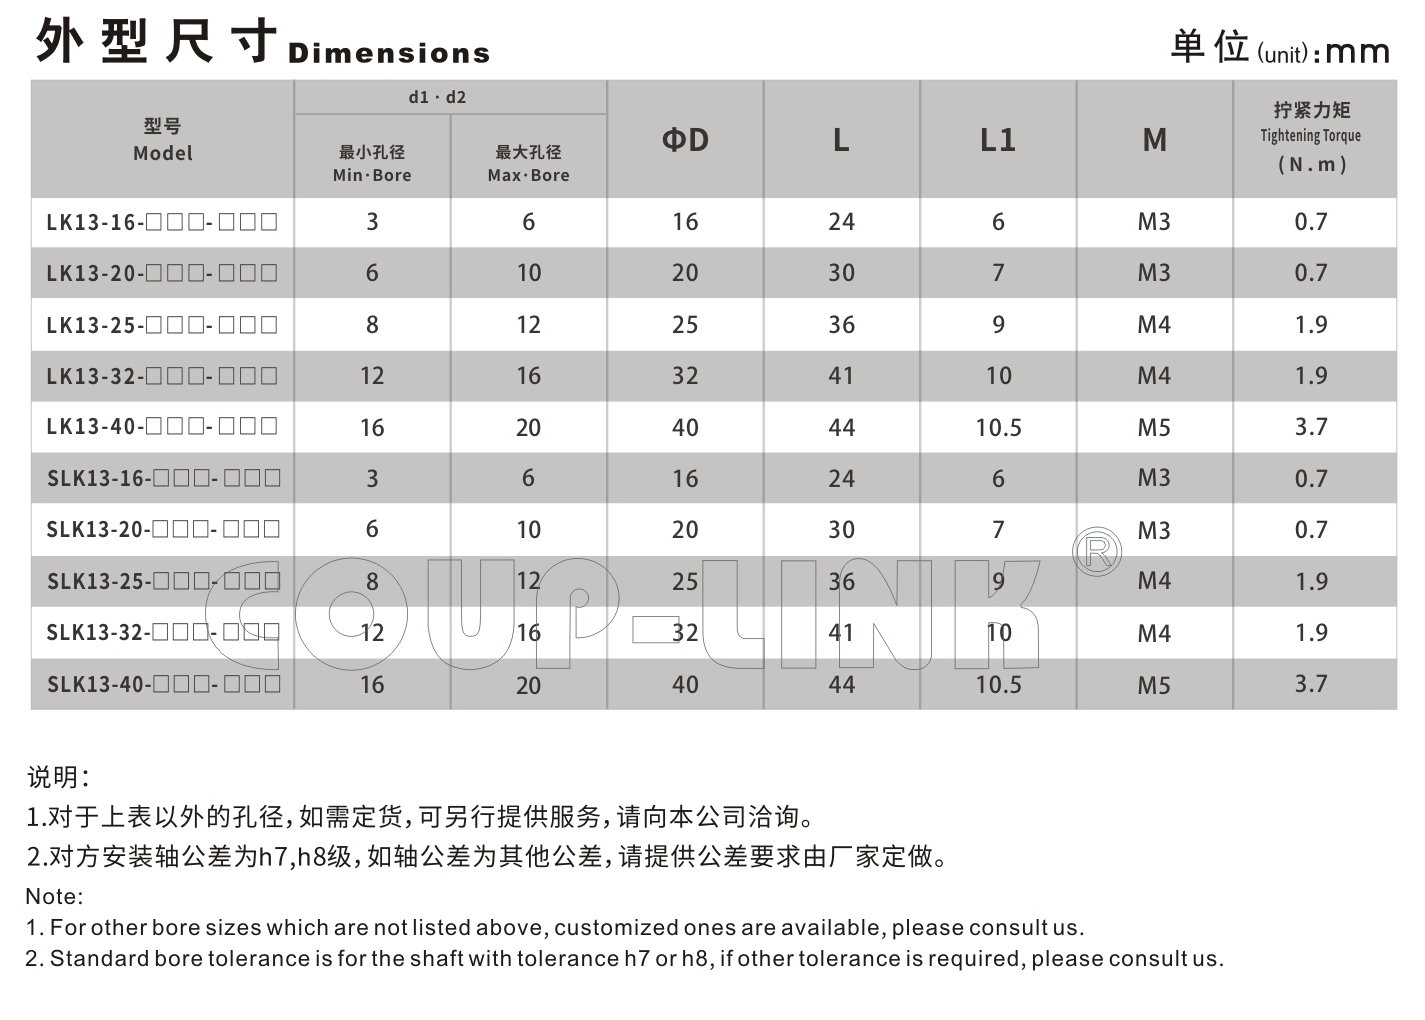 LK13系列 定位螺丝固定微型刚性联轴器_联轴器种类-广州菱科自动化设备有限公司